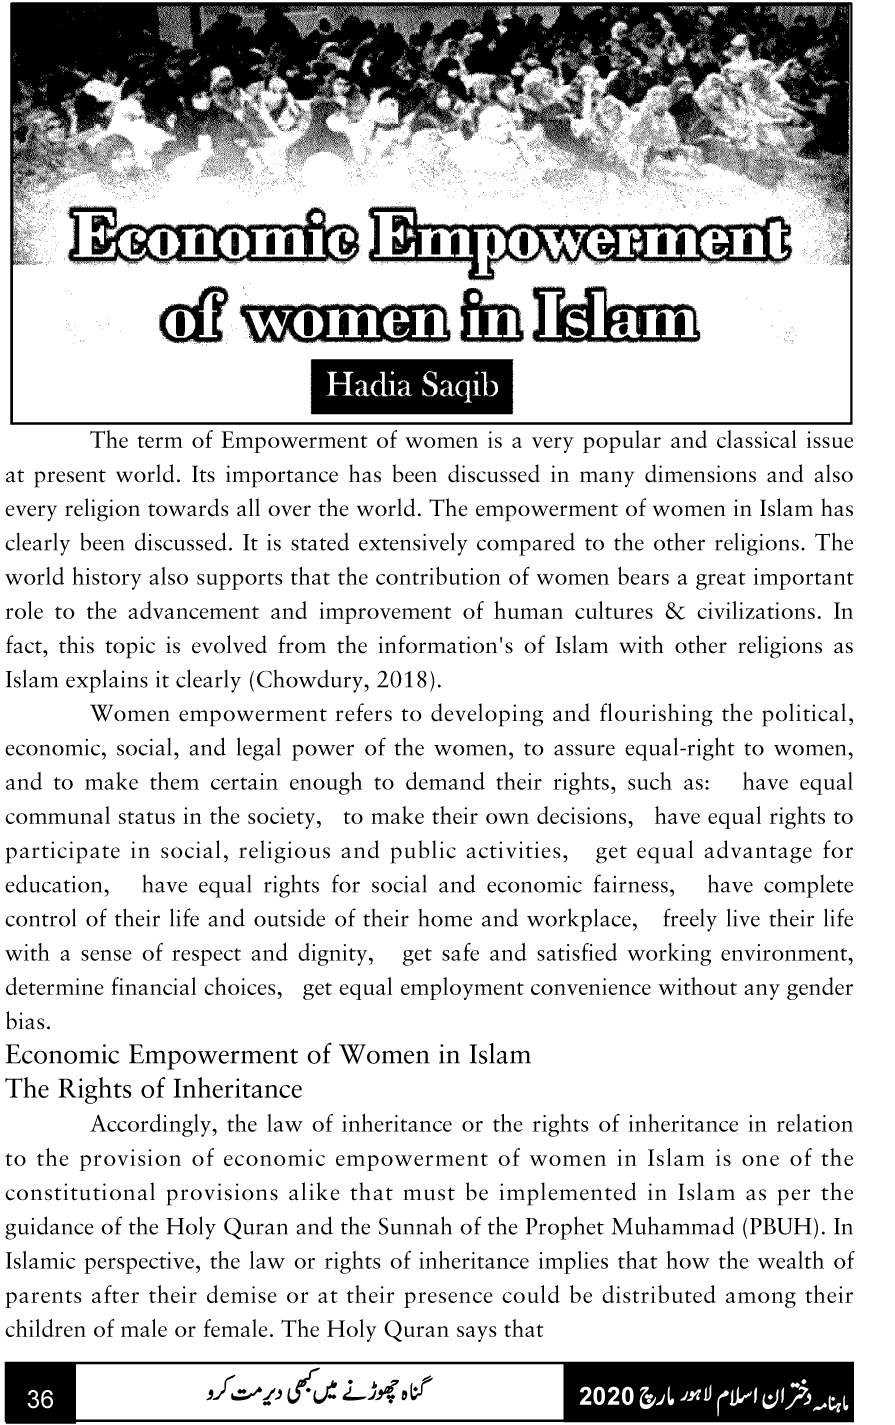 Women Empowerment in Islam